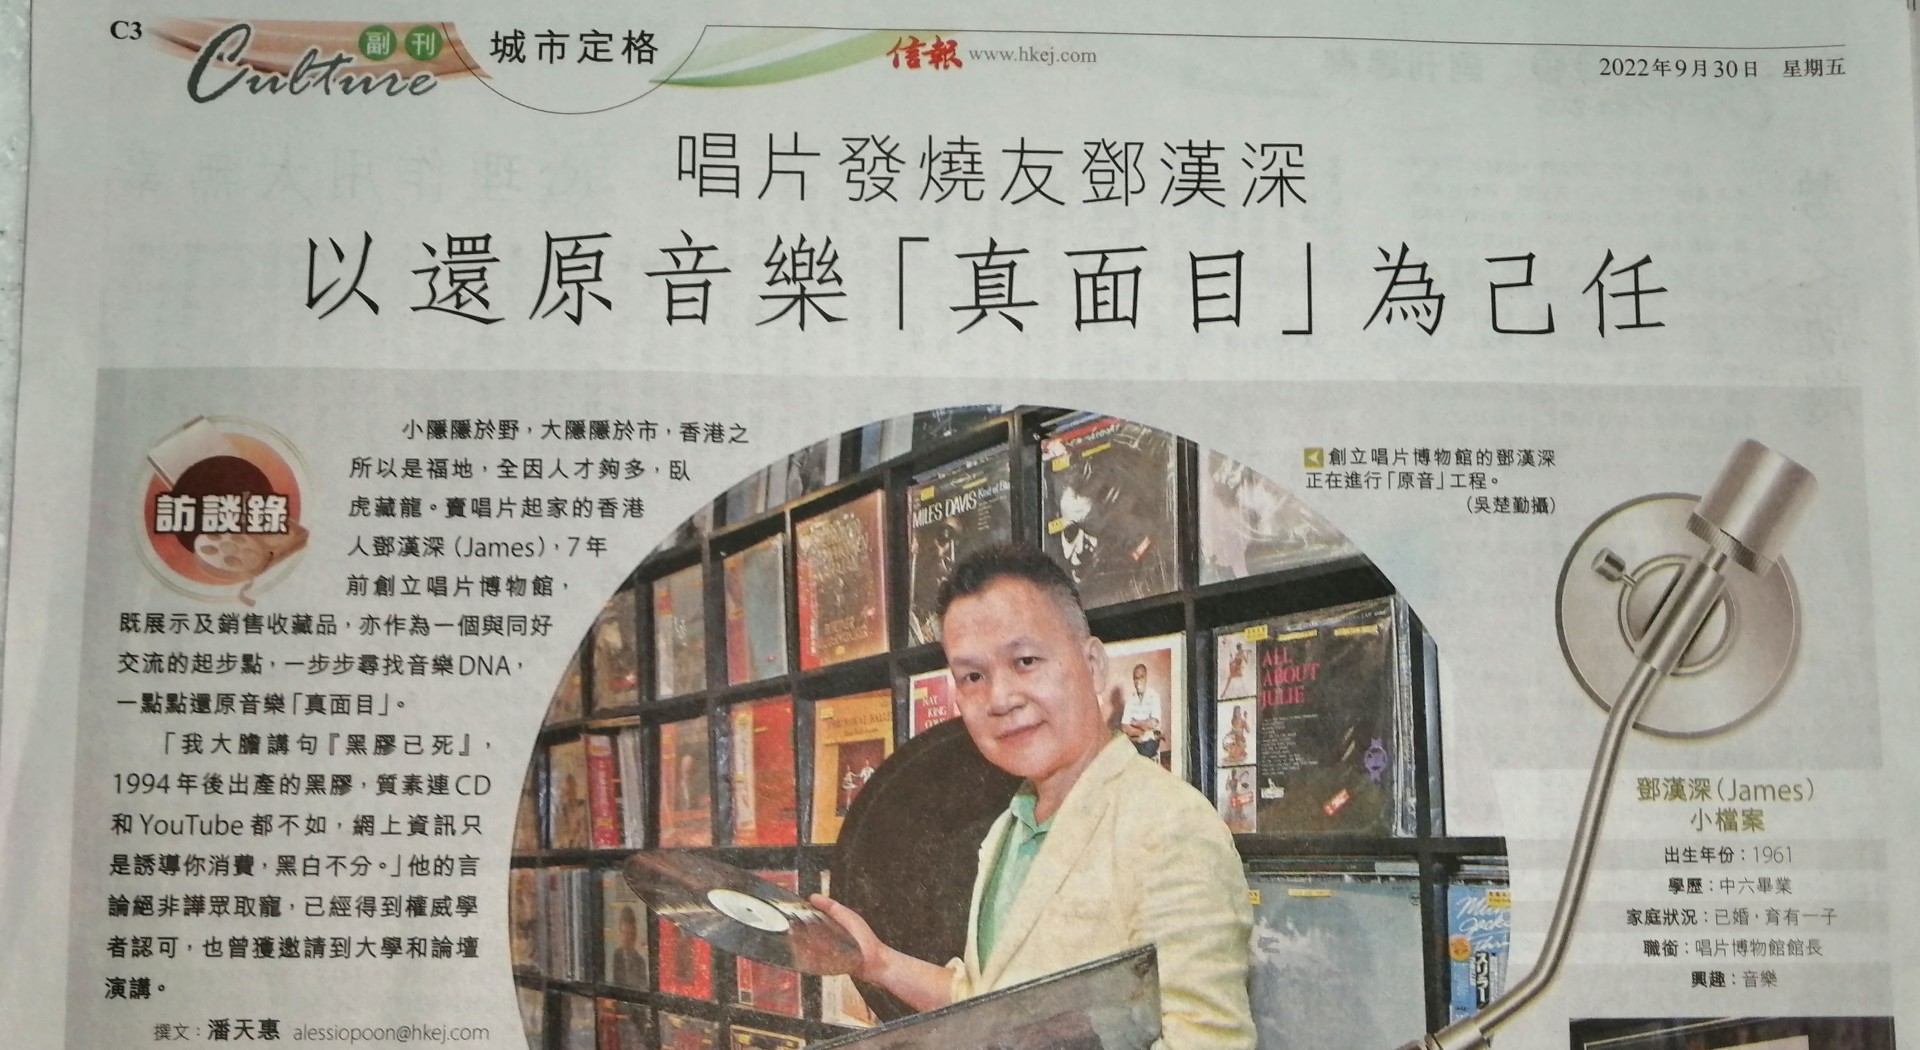 Hong Kong Economic Journal Interview